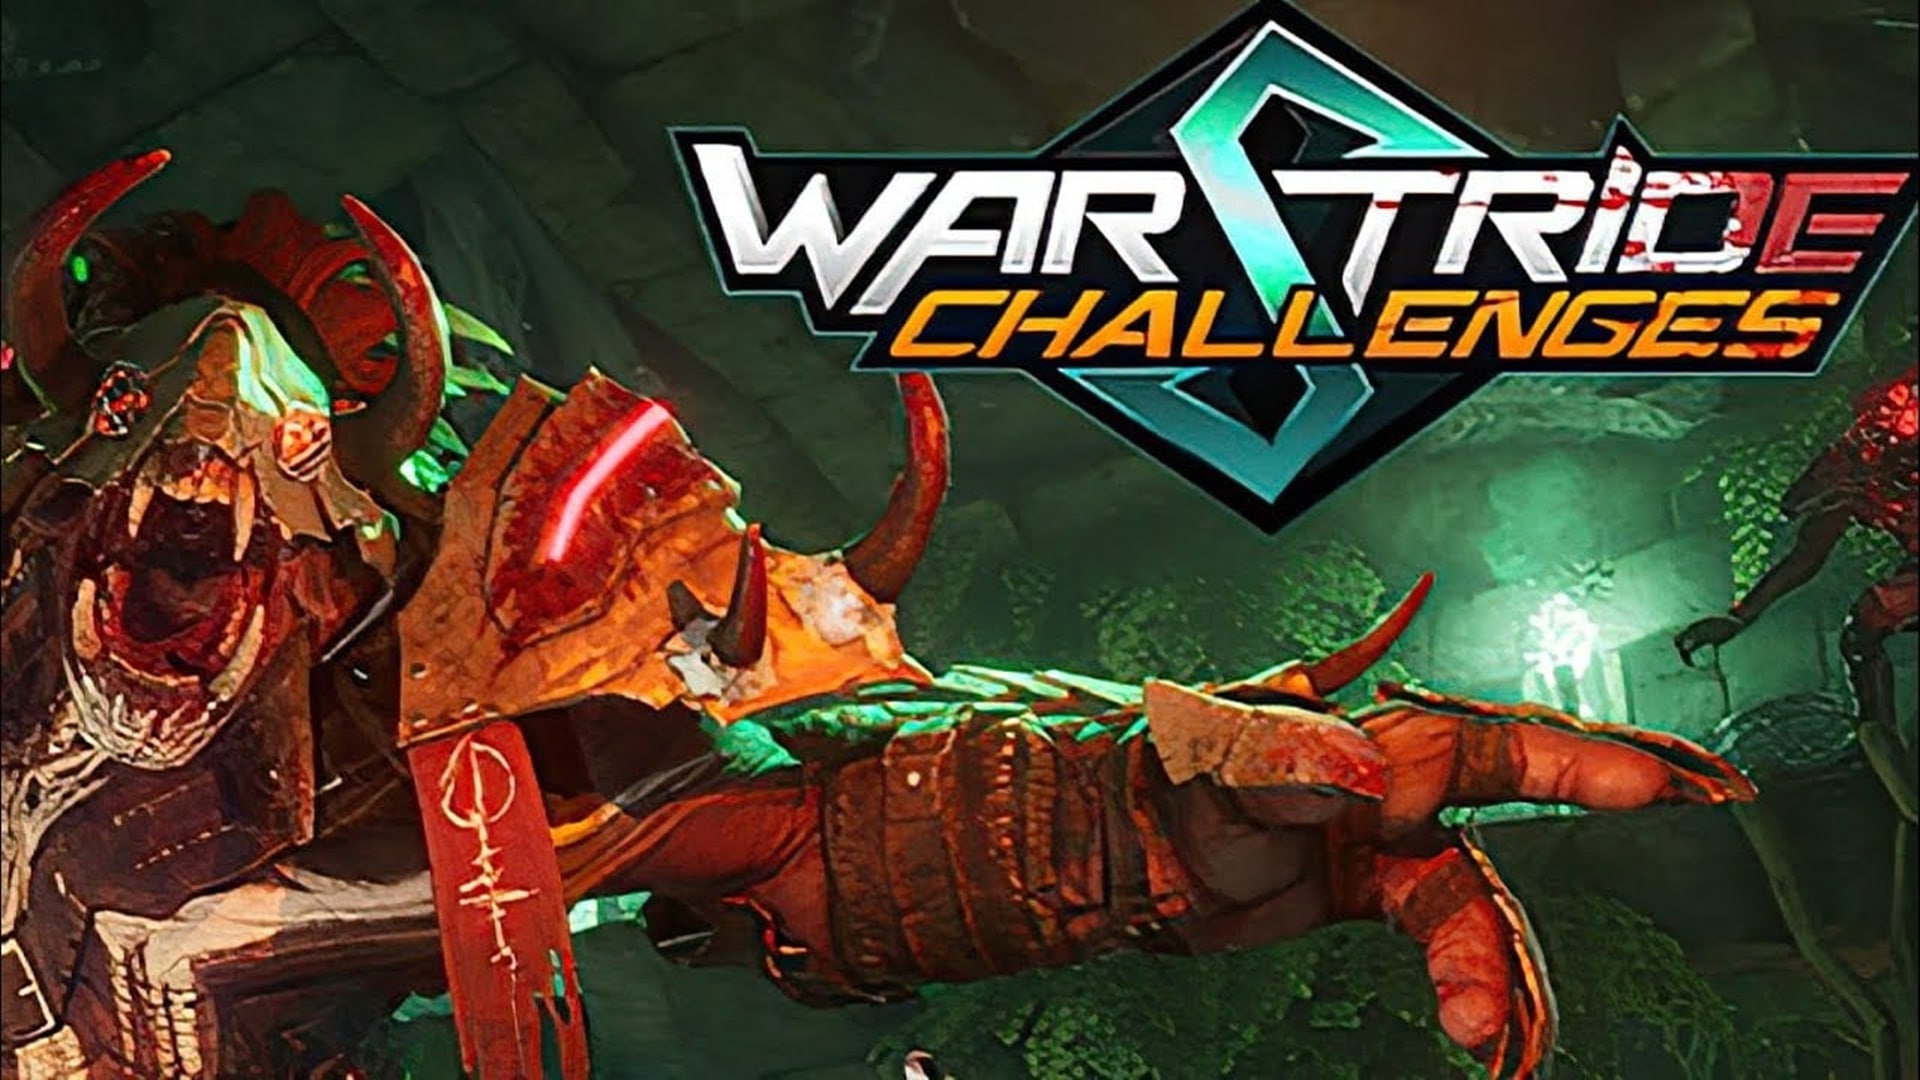 Warstride Challenges anunciado para PS5, GamersRD